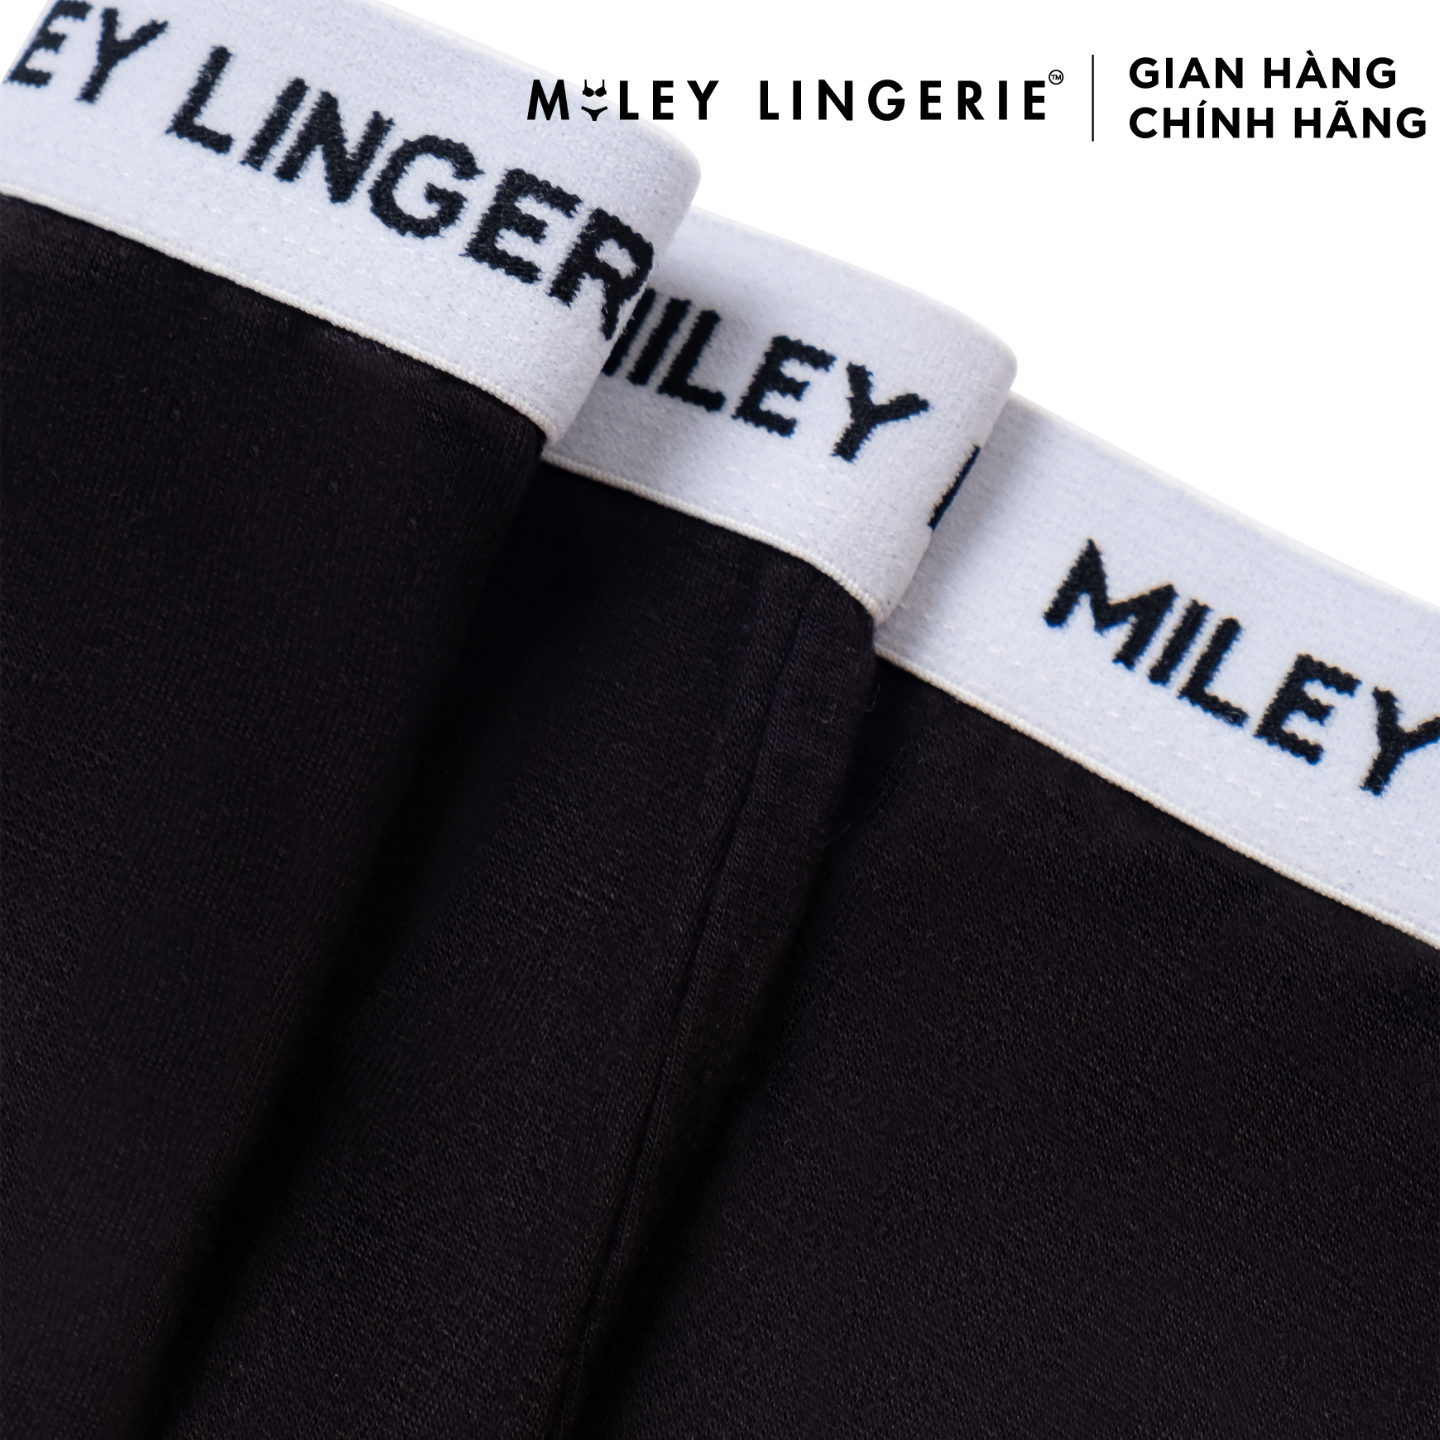 Combo 5 Quần Lót Nữ Cotton Thiên Nhiên BeingMe Miley Lingerie - Màu Đen